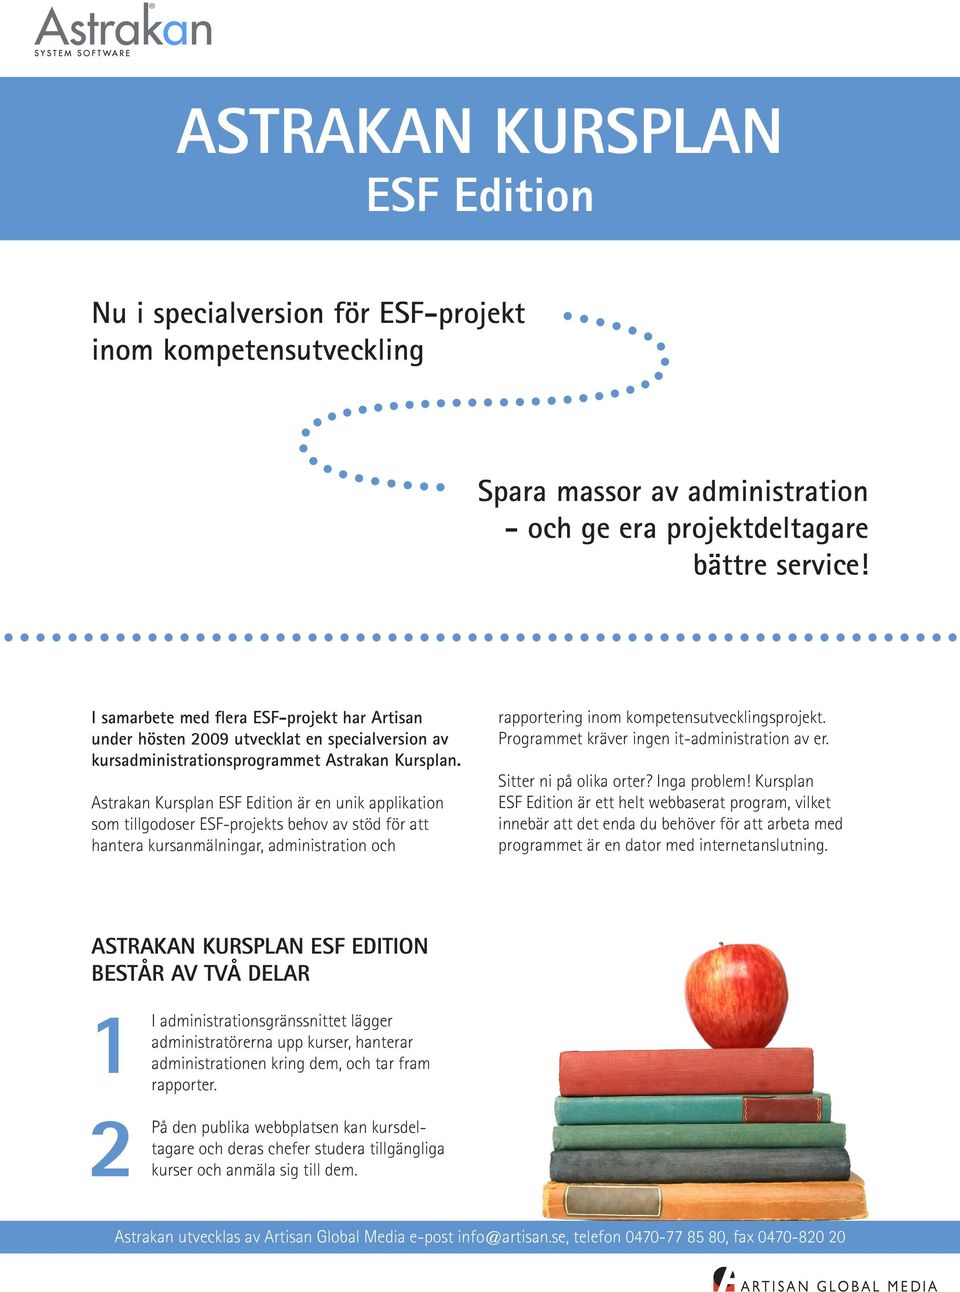 Astrakan Kursplan ESF Edition är en unik applikation som tillgodoser ESF-projekts behov av stöd för att hantera kursanmälningar, administration och rapportering inom kompetensutvecklingsprojekt.